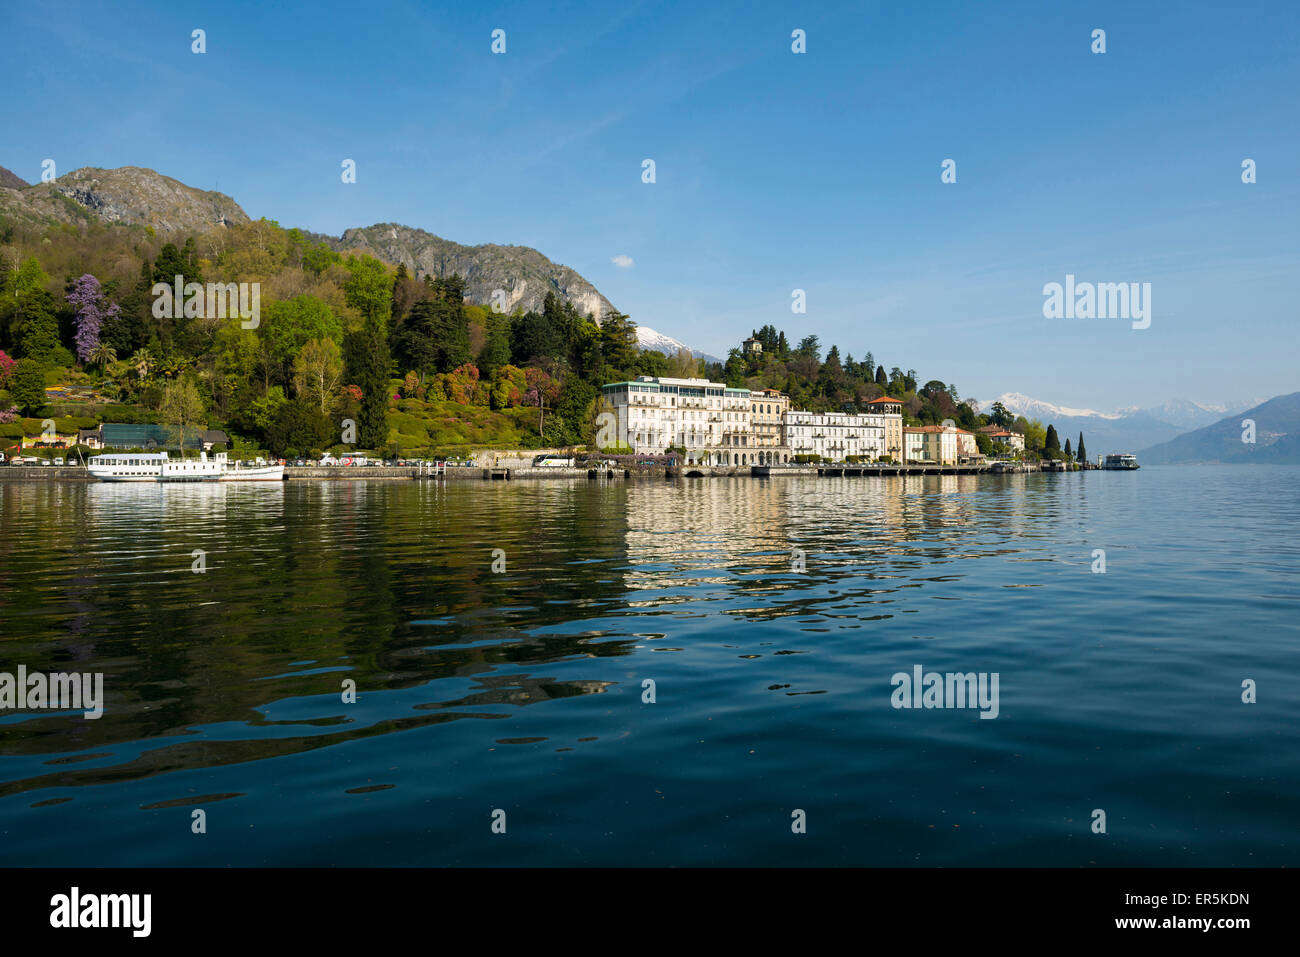 Villa Carlotta, Tremezzo, Lake Como, Lago di Como, Province of Como, Lombardy, Italy Stock Photo